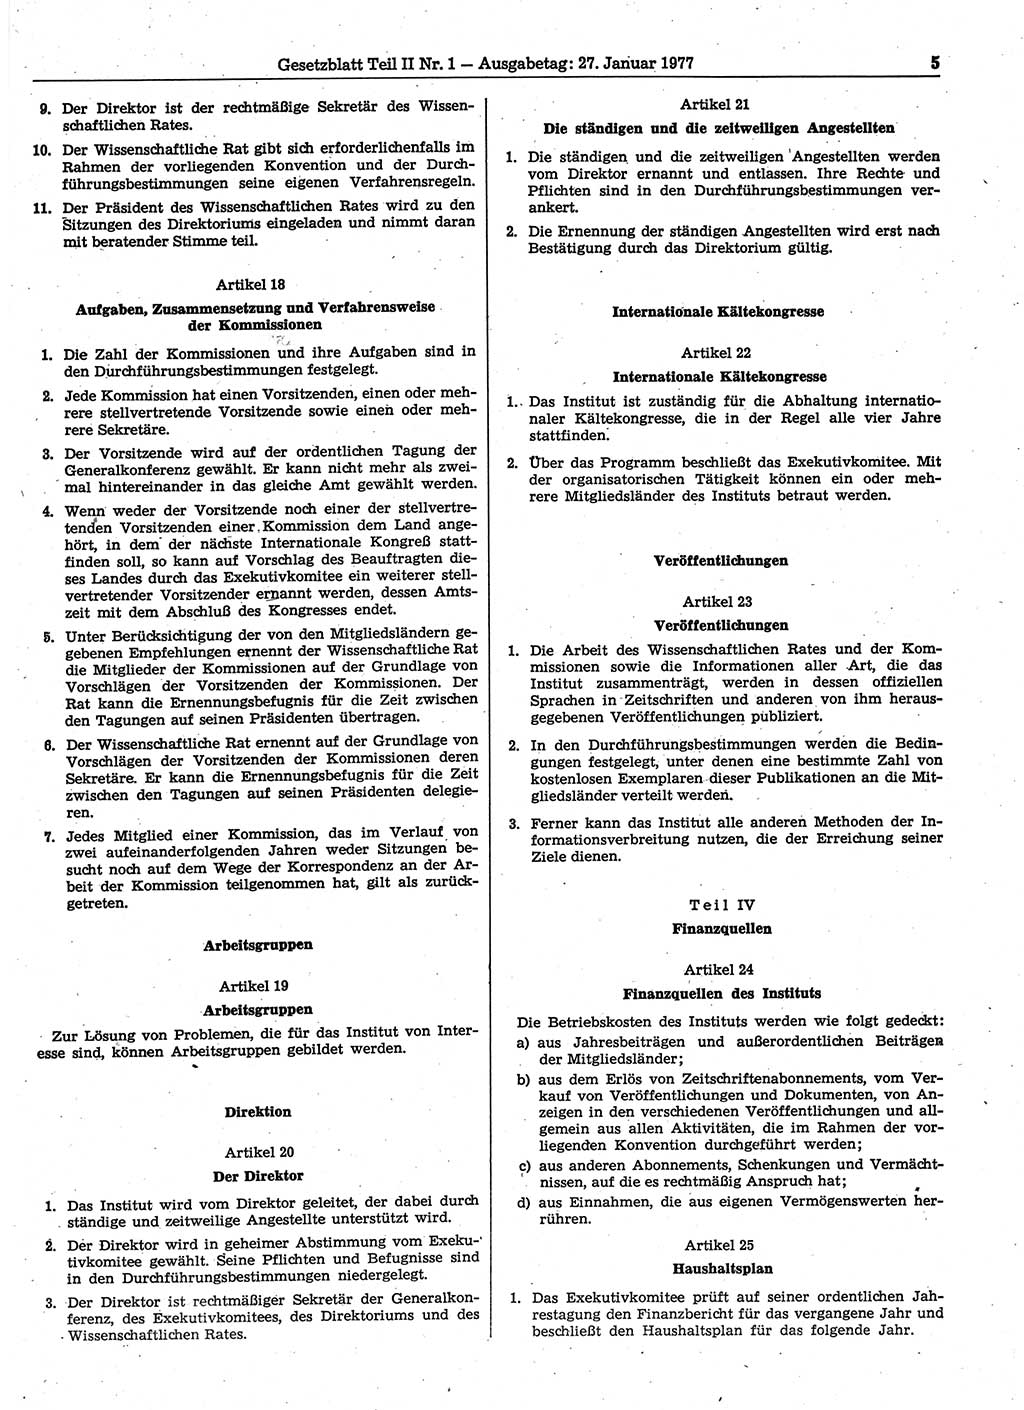 Gesetzblatt (GBl.) der Deutschen Demokratischen Republik (DDR) Teil ⅠⅠ 1977, Seite 5 (GBl. DDR ⅠⅠ 1977, S. 5)